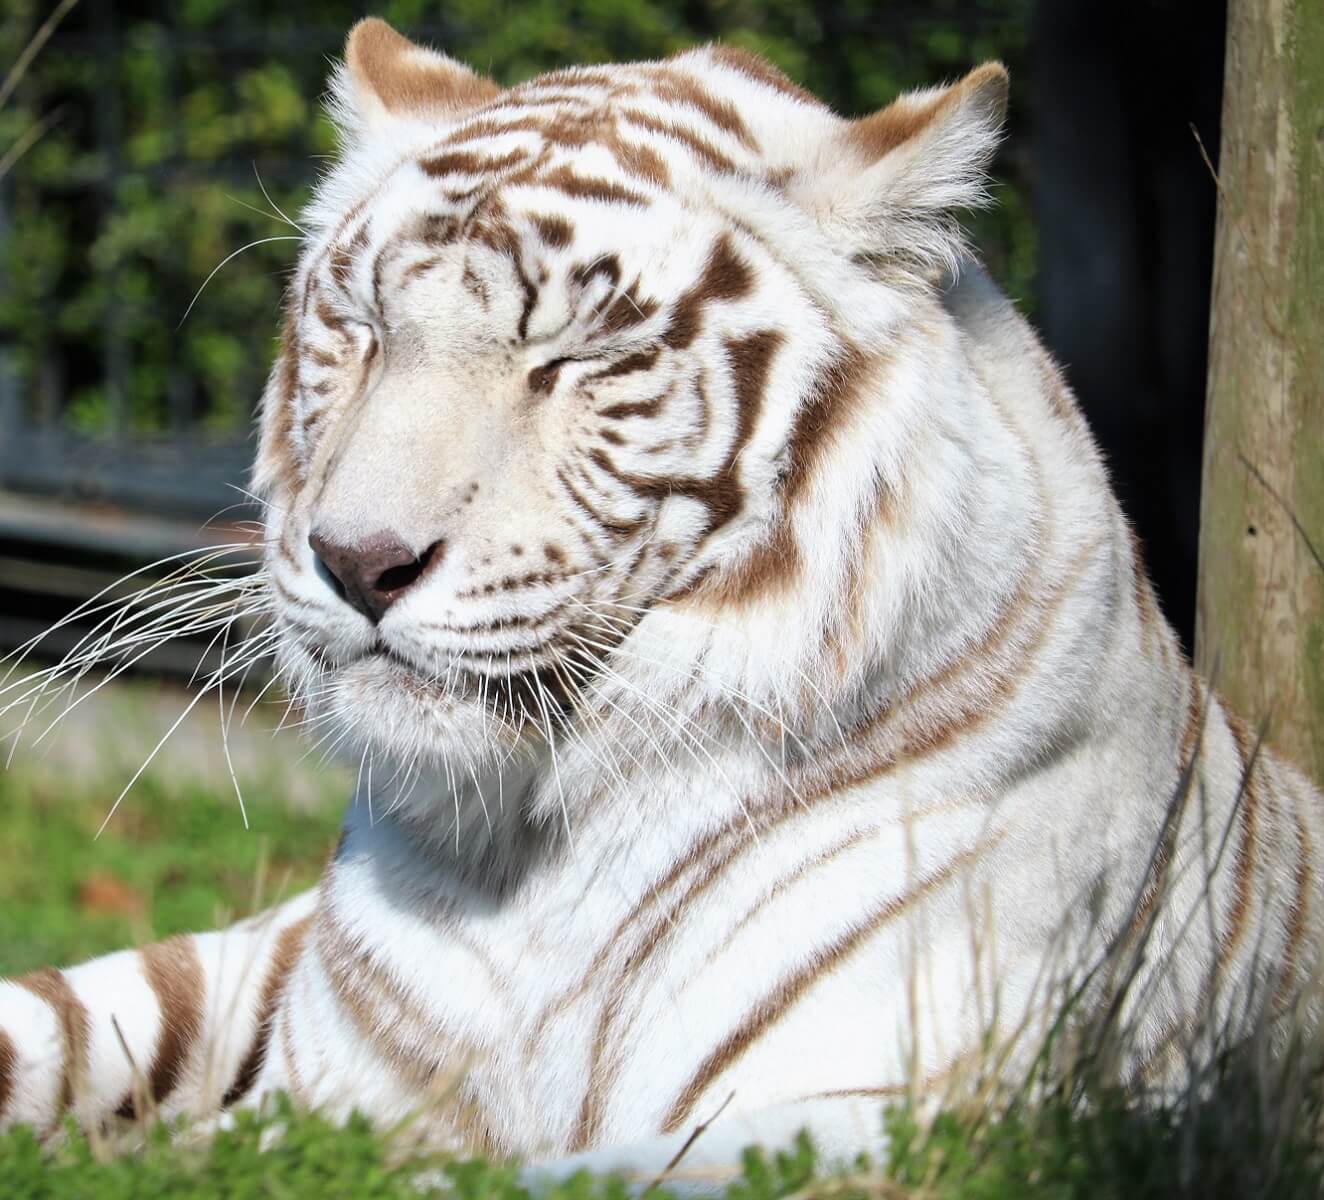 ホワイトタイガーとは 白いトラに隠された動物繁殖の真相 Zoo Zoo Diary 動物園と豆知識